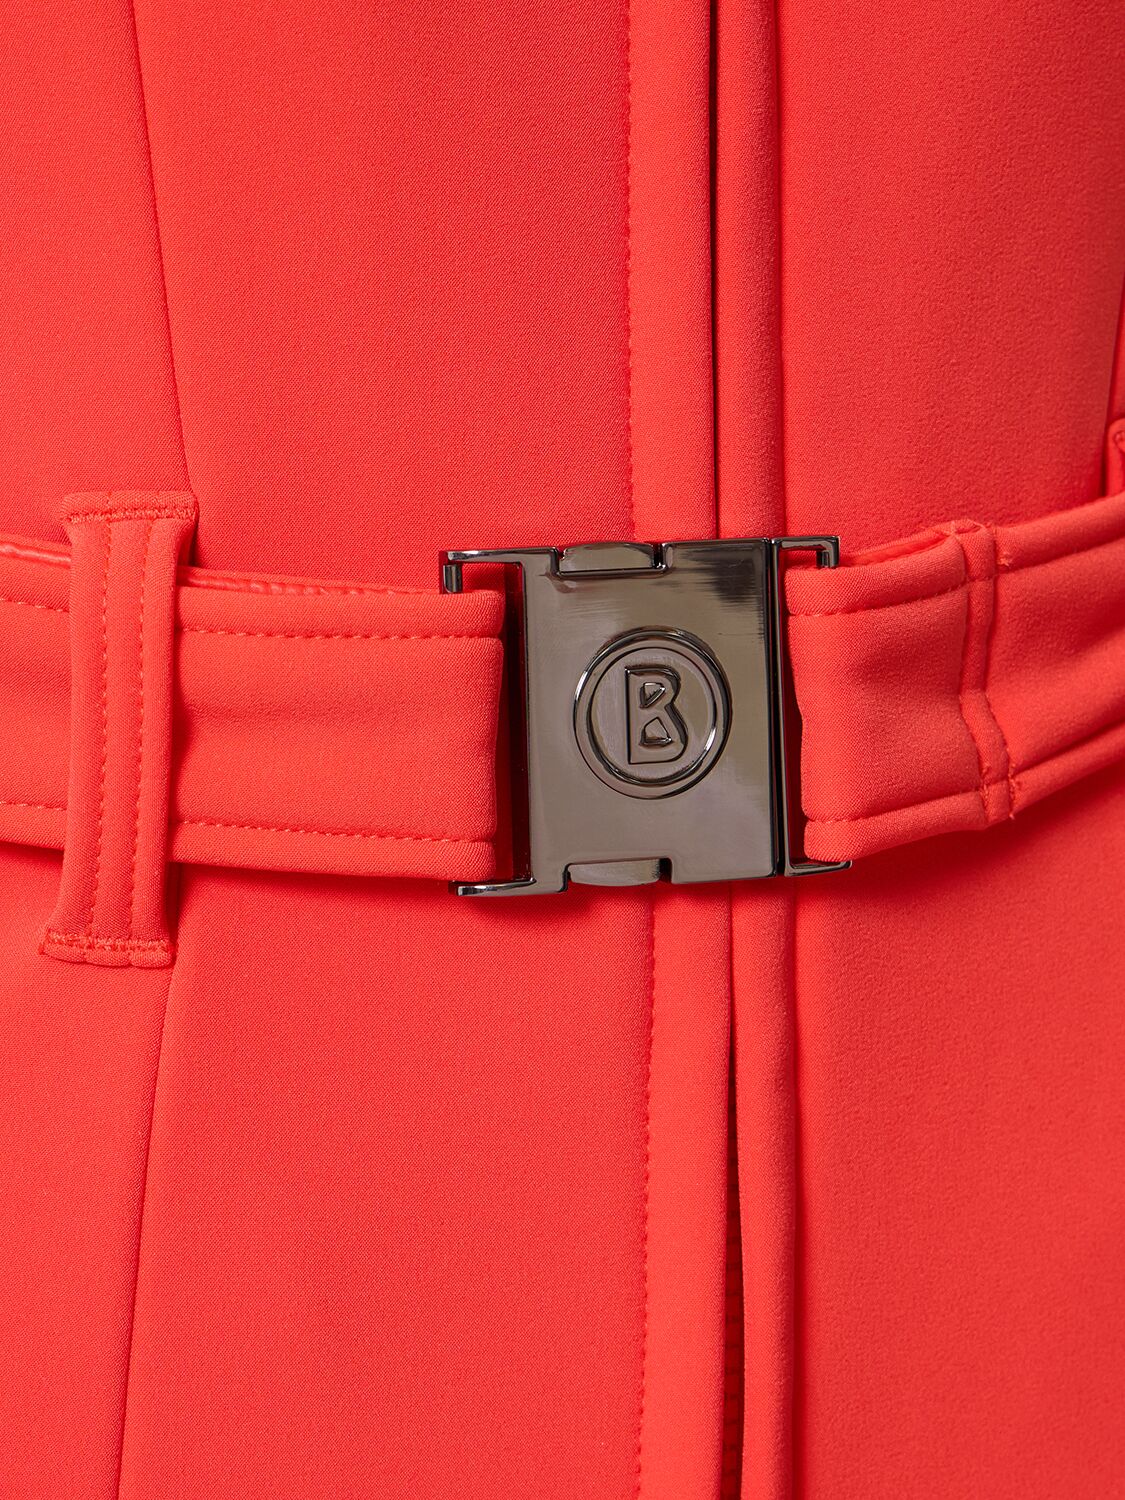 Shop Bogner Talisha High Neck Long Sleeve Ski Suit In Orange,red